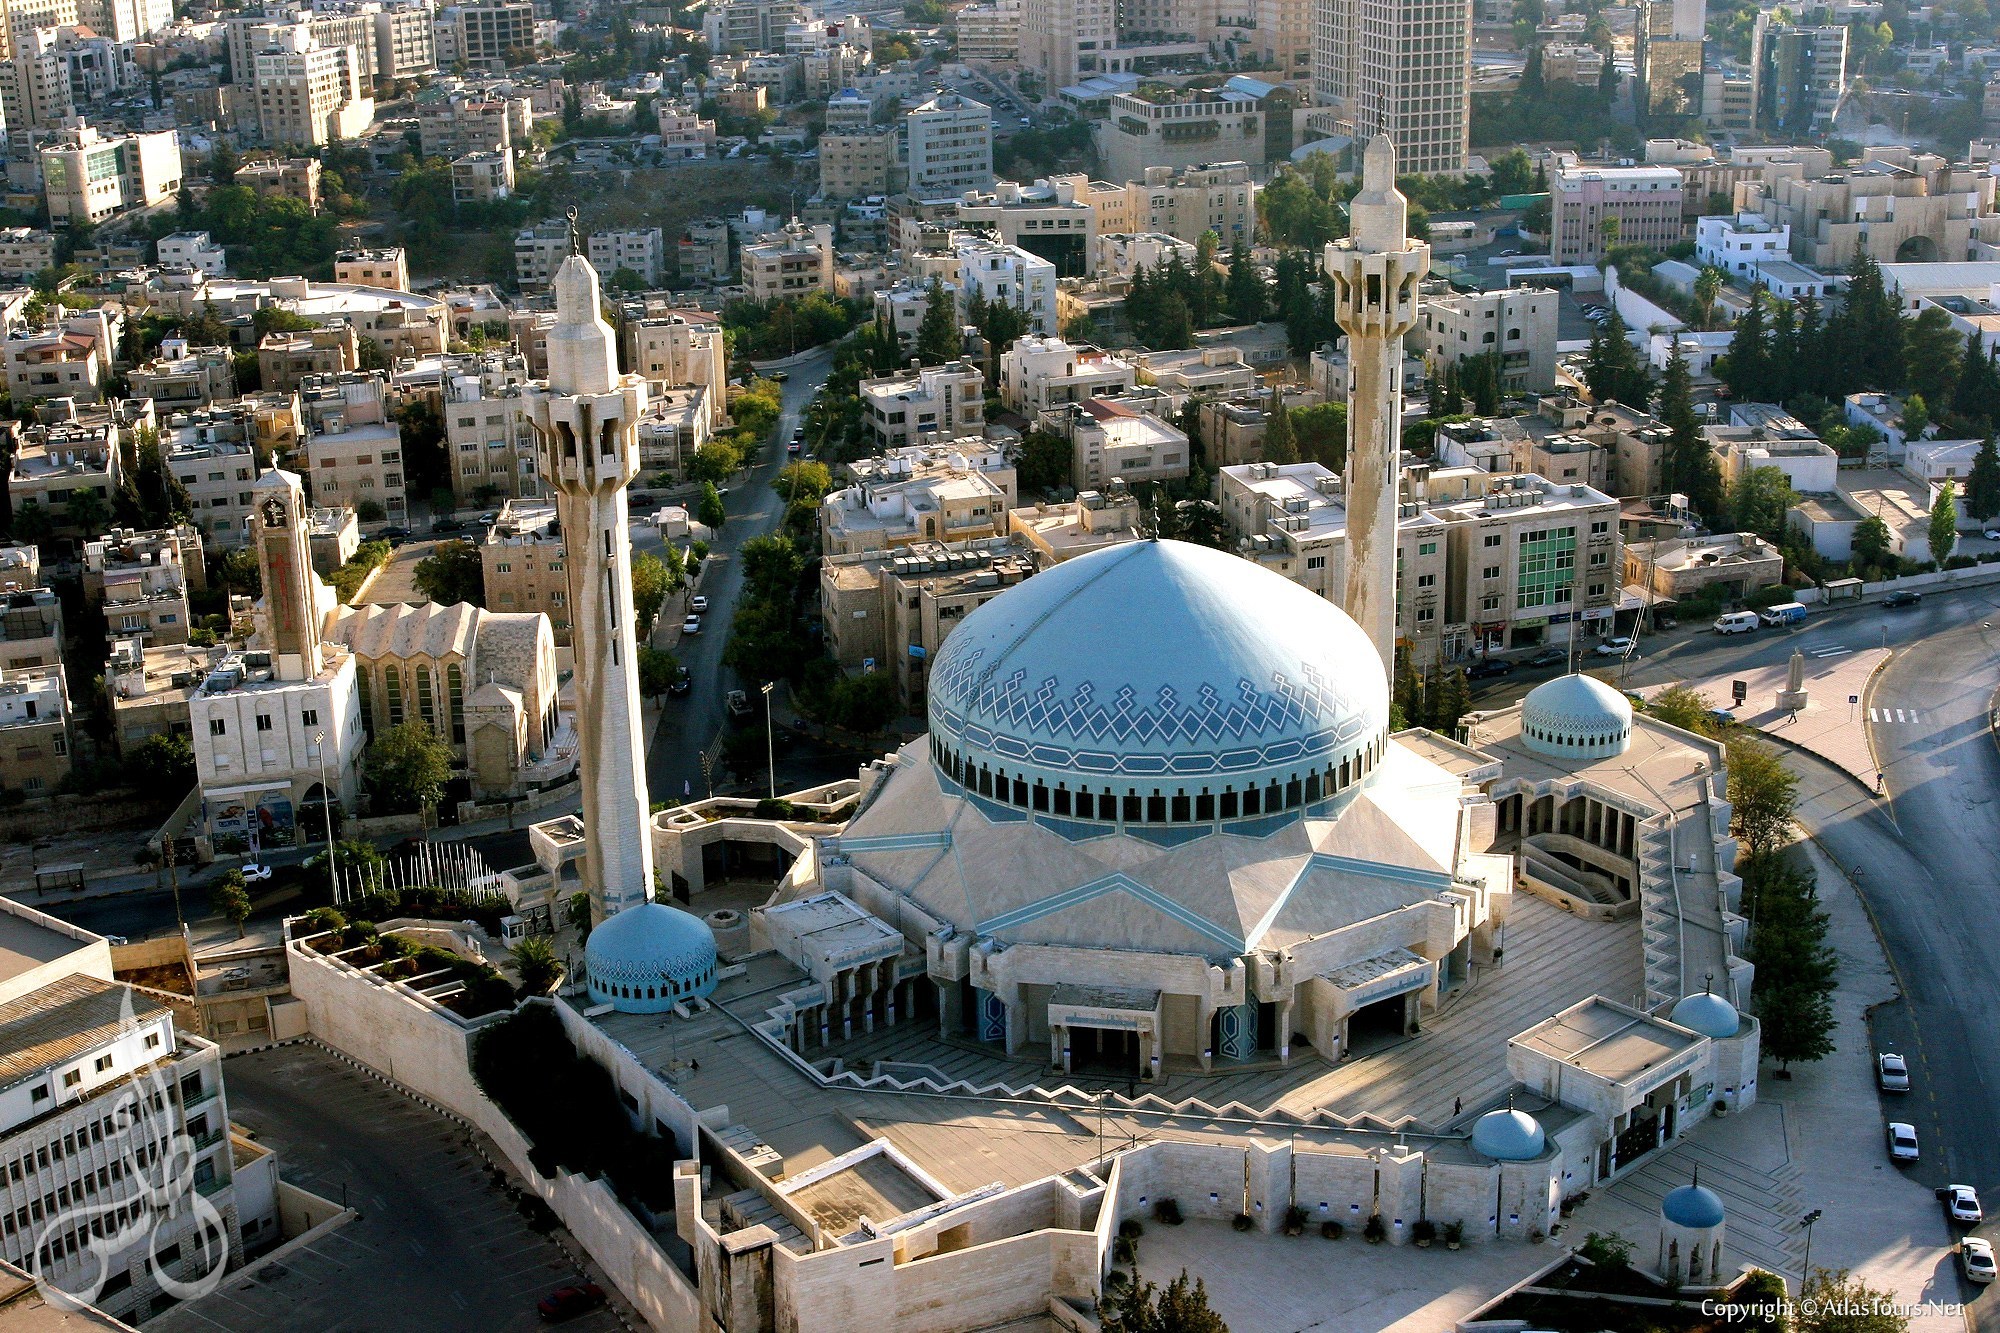 amman_king_abdullah_mosque_aerial_view.jpg